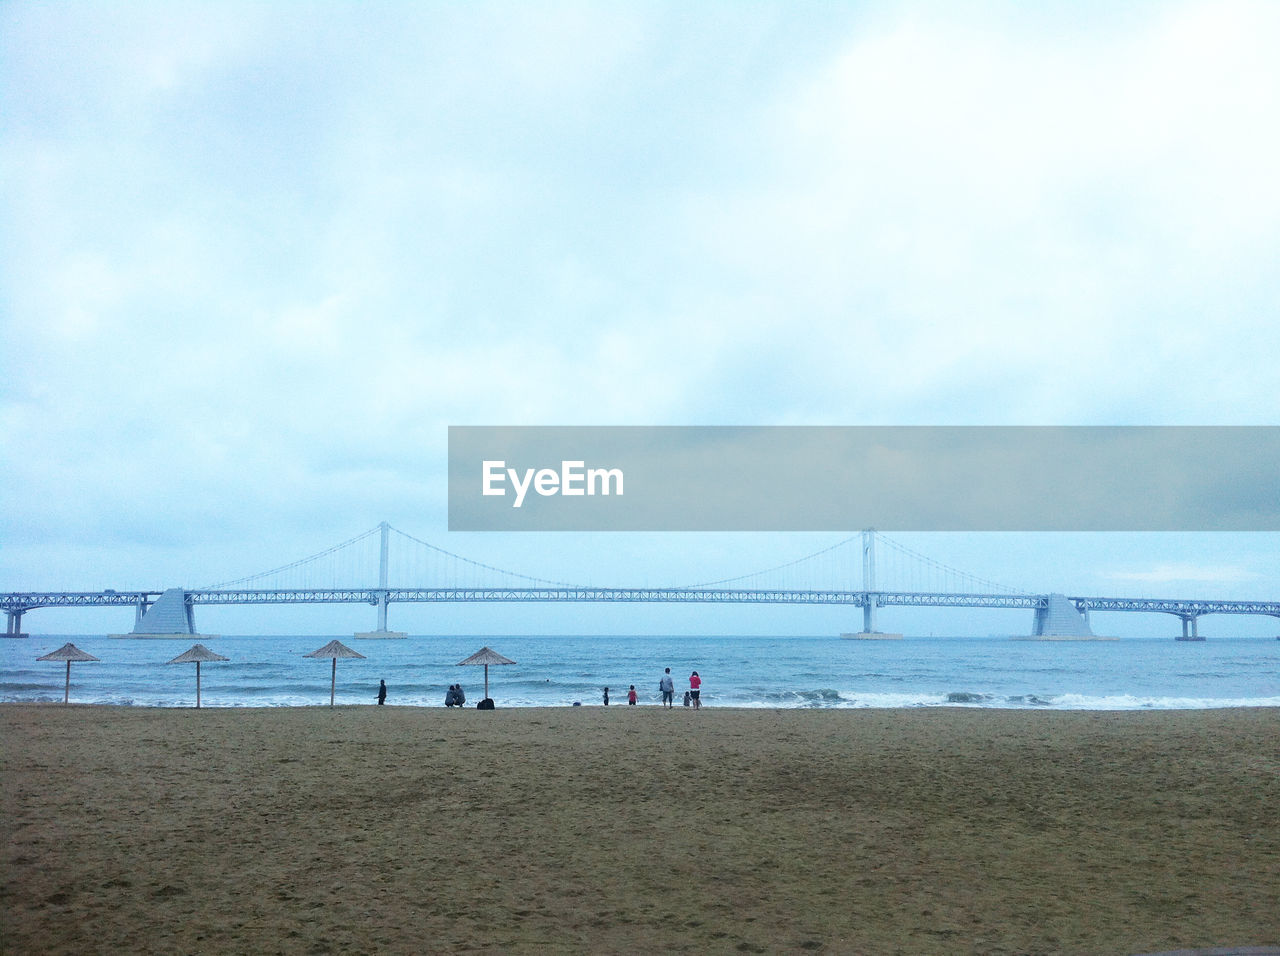 Gwangan bridge over sea against cloudy sky